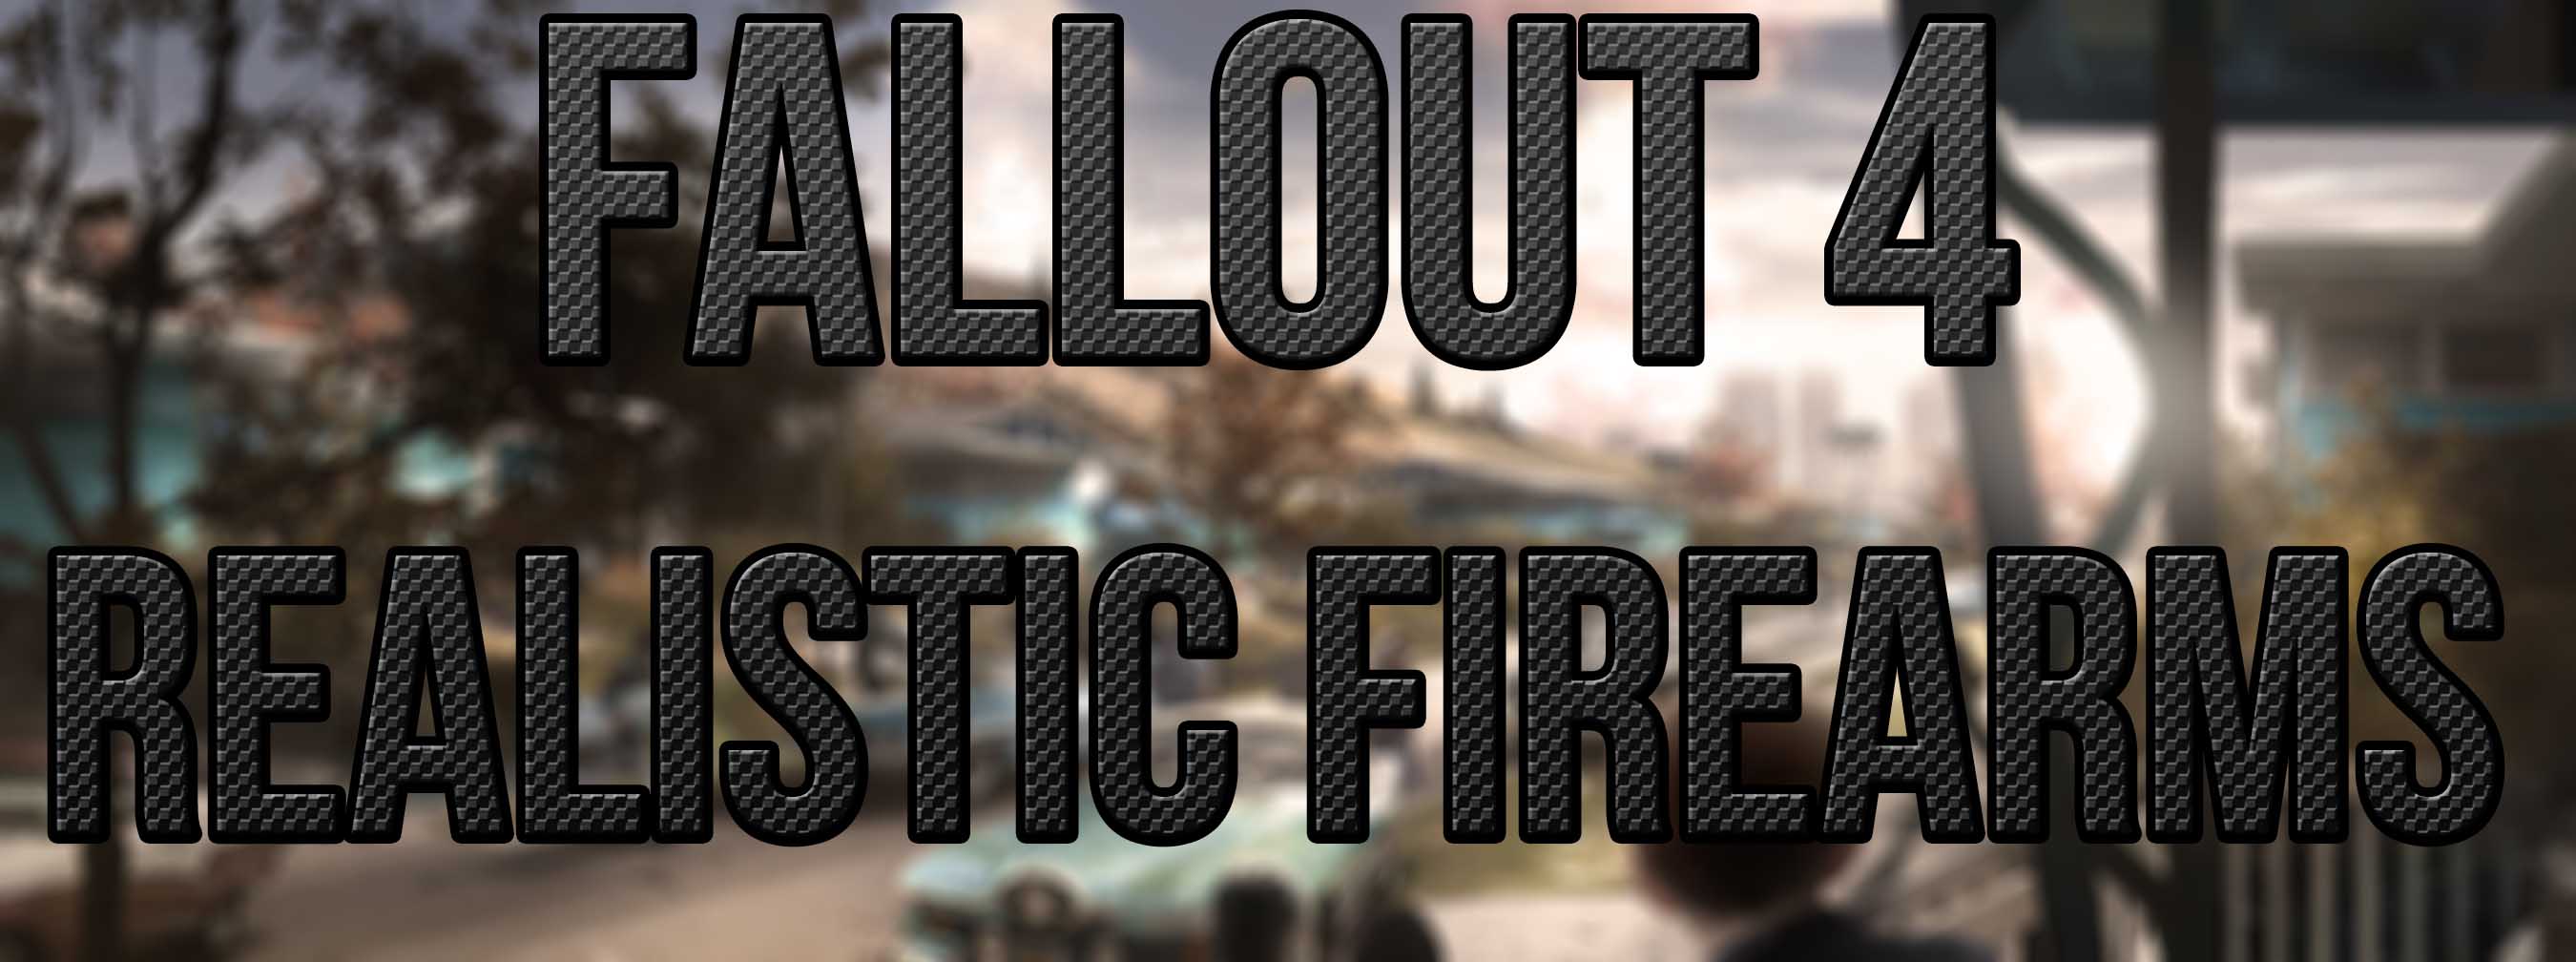 Fallout 4 реалистичные звуки стрельбы (120) фото